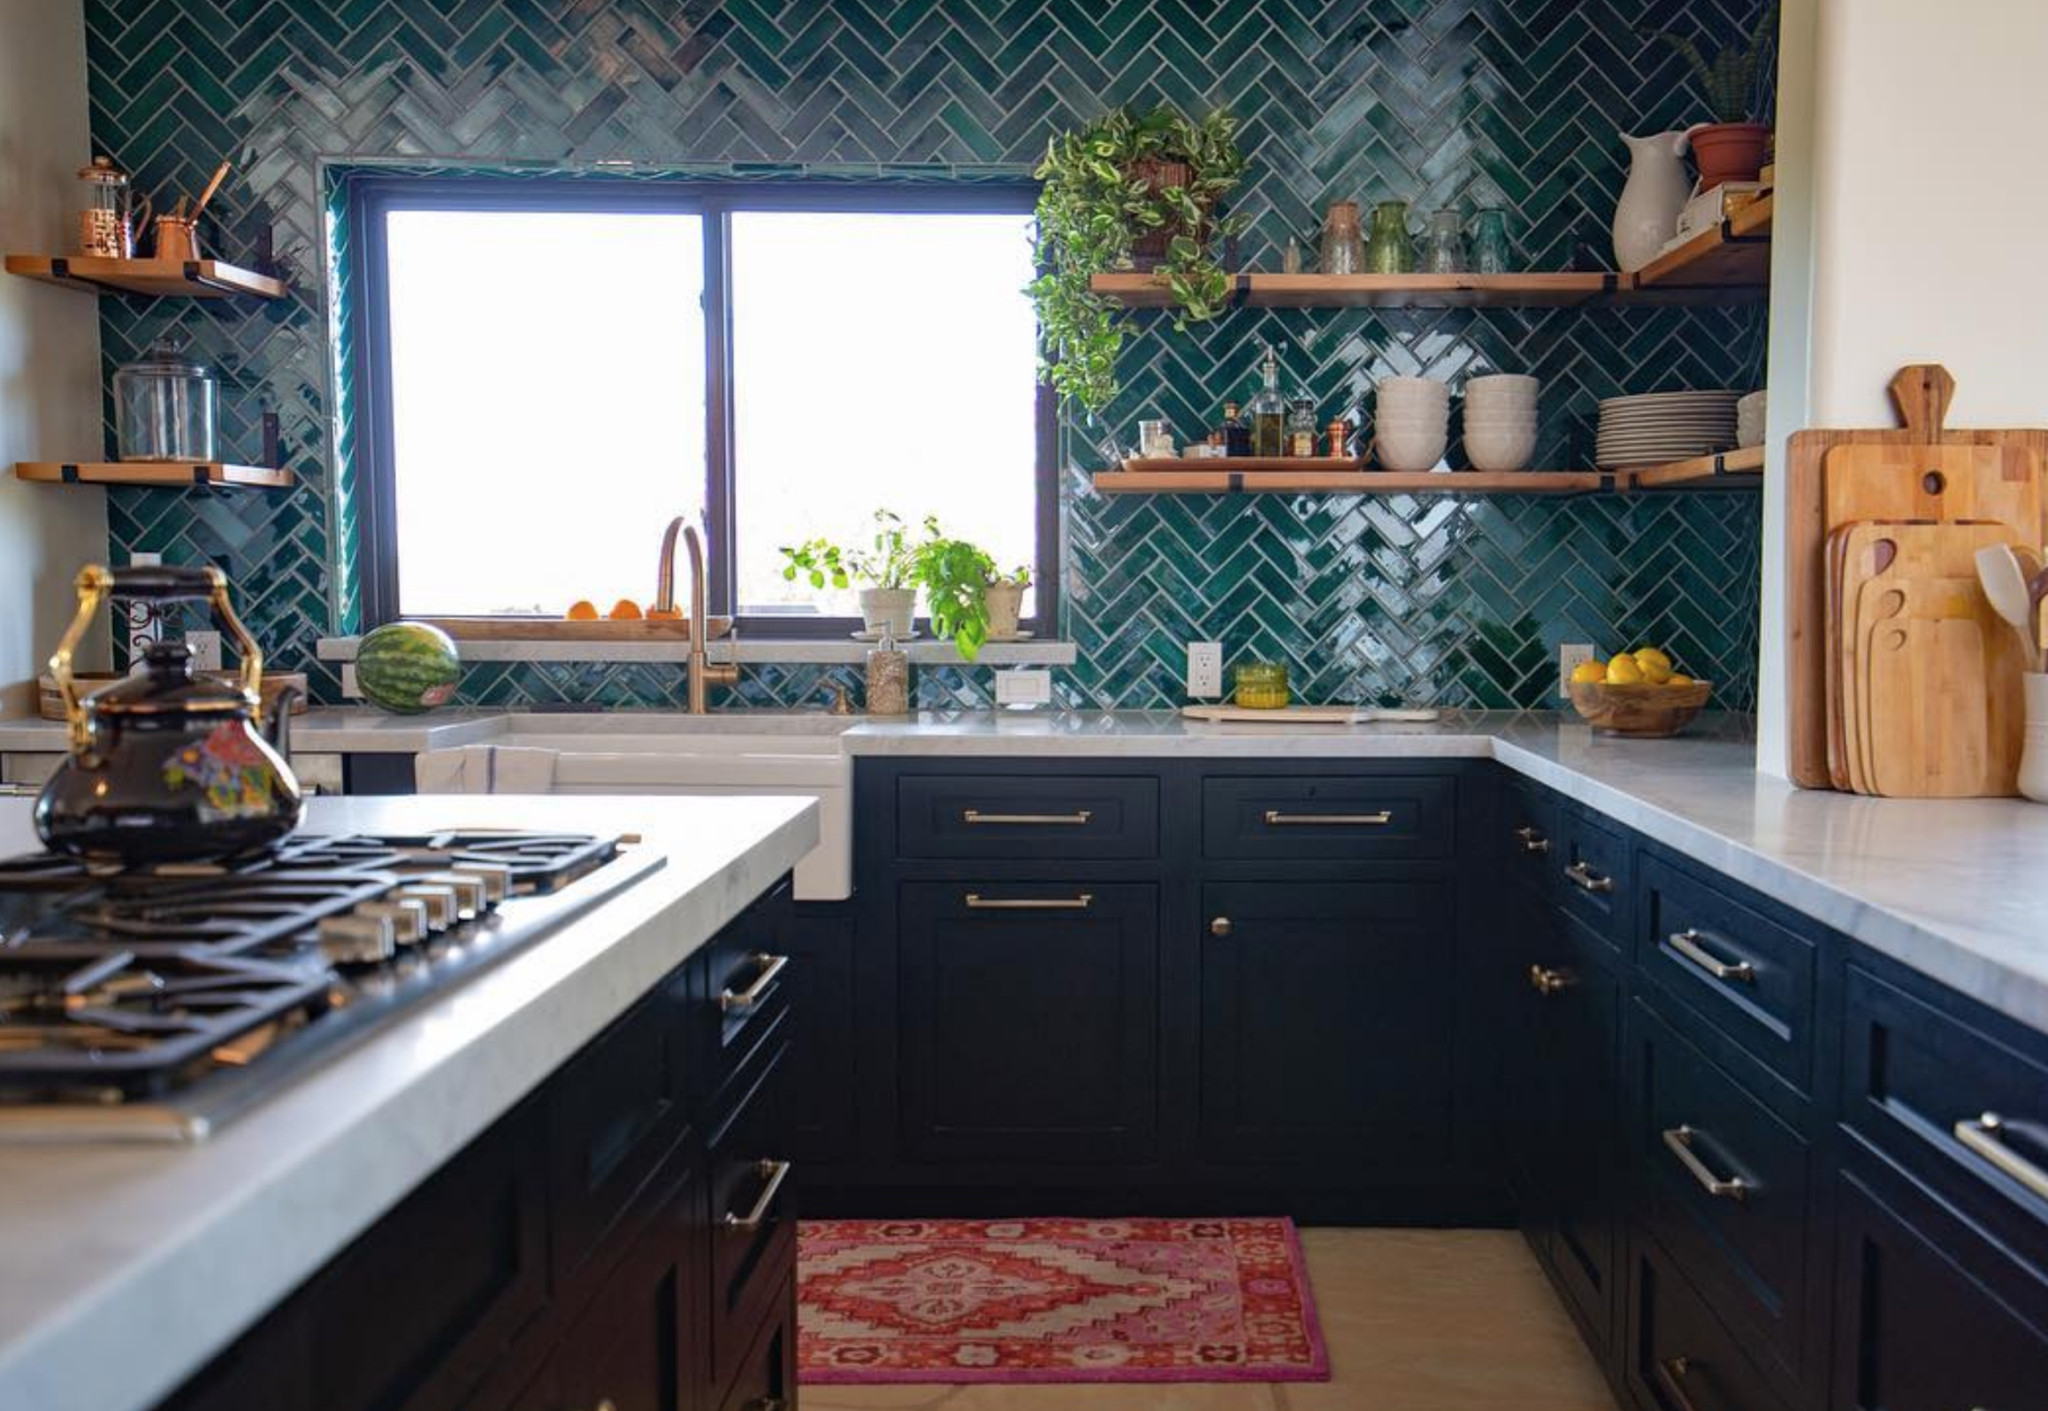 Green Tile Backsplash Kitchen
 14 Tile Open Shelving Designs A Match Made in Heaven